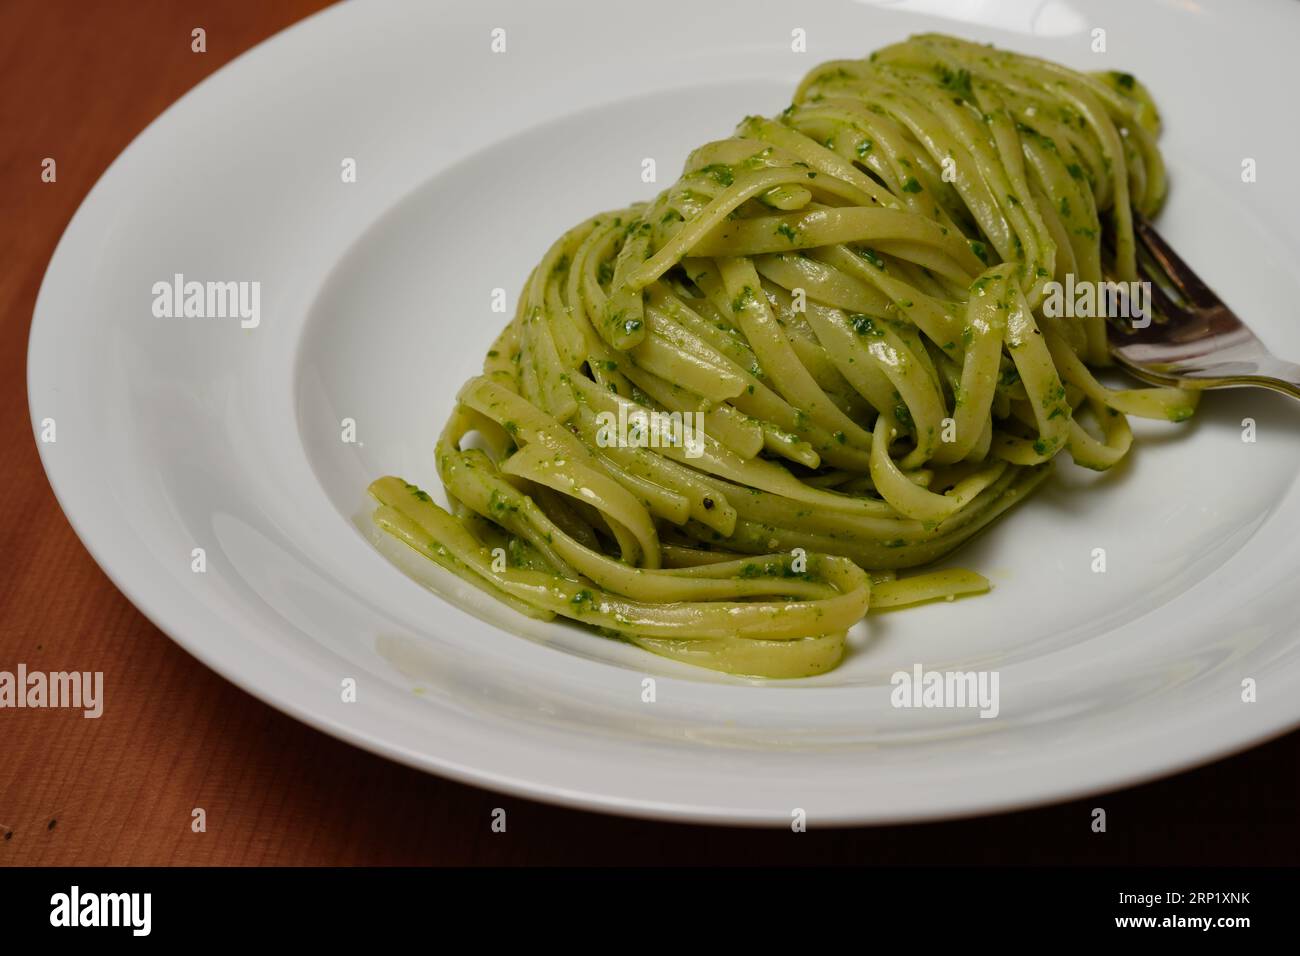 Trenette ou Linguine Pasta avec pesto alla Genovese vert avec basilic Banque D'Images